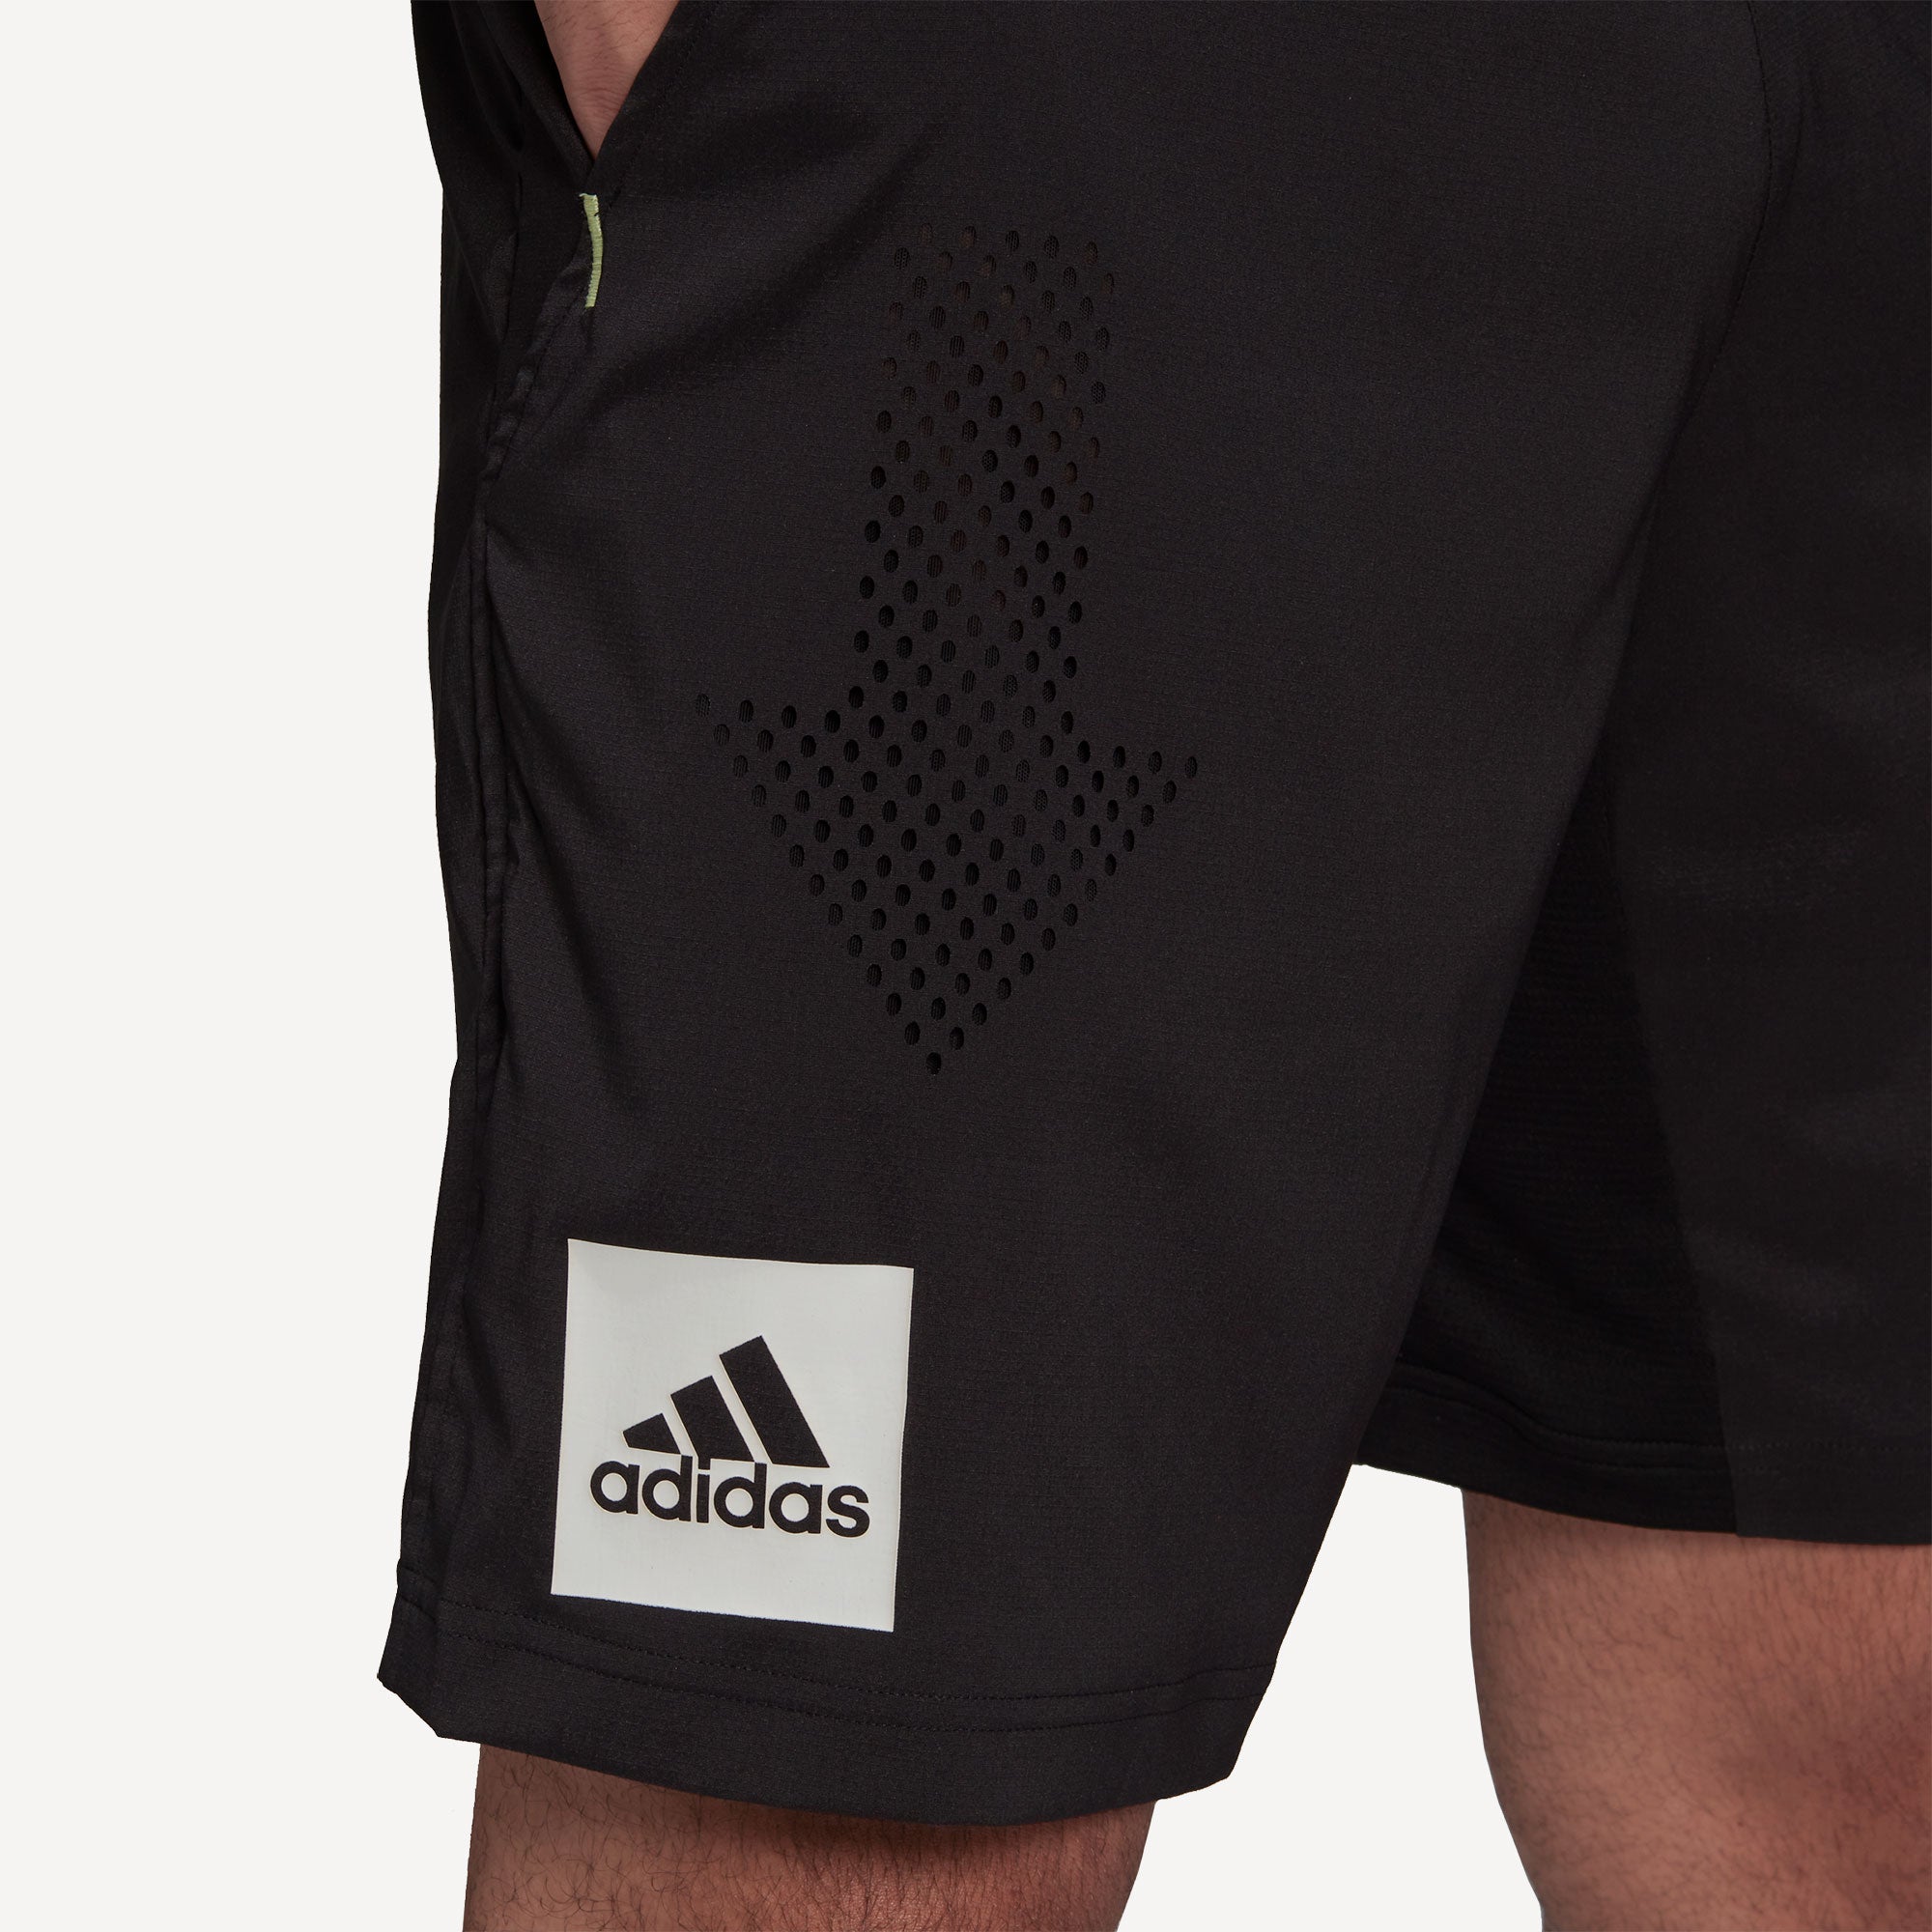 adidas Paris Ergo Men's 9-Inch Tennis Shorts Black (7)